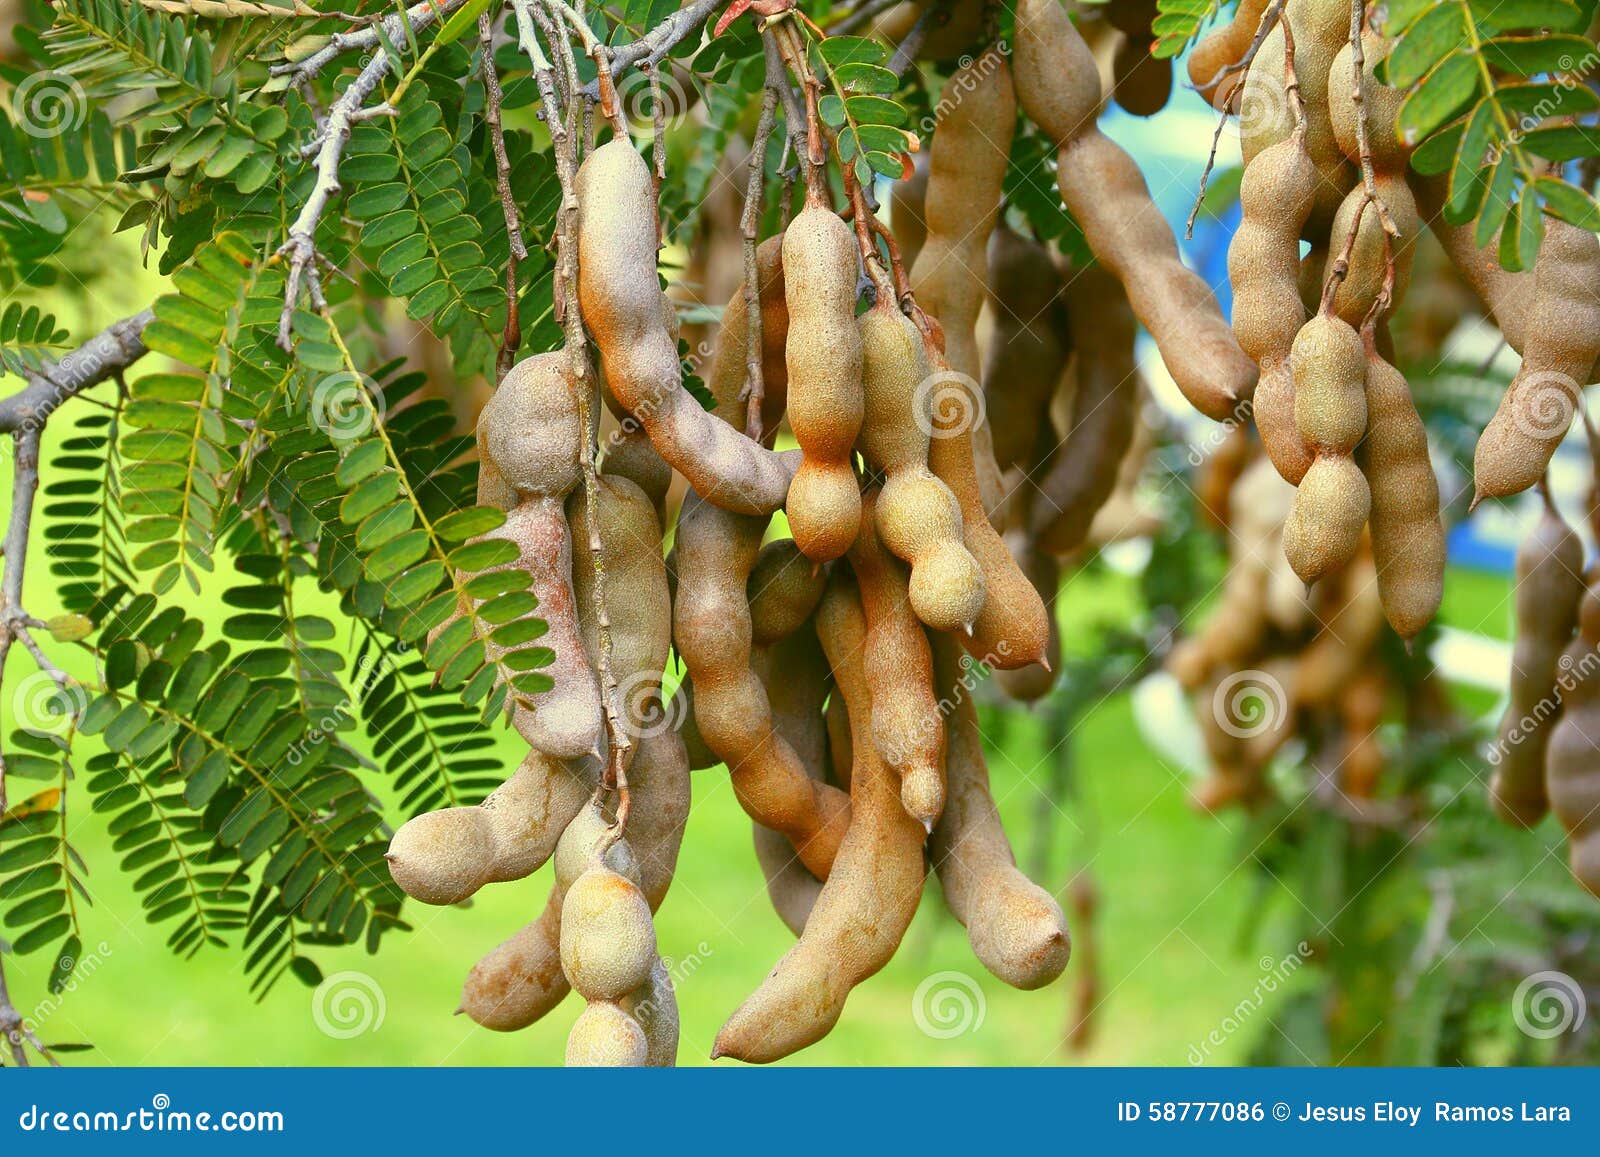 Розмір плодів дерева тамаринда